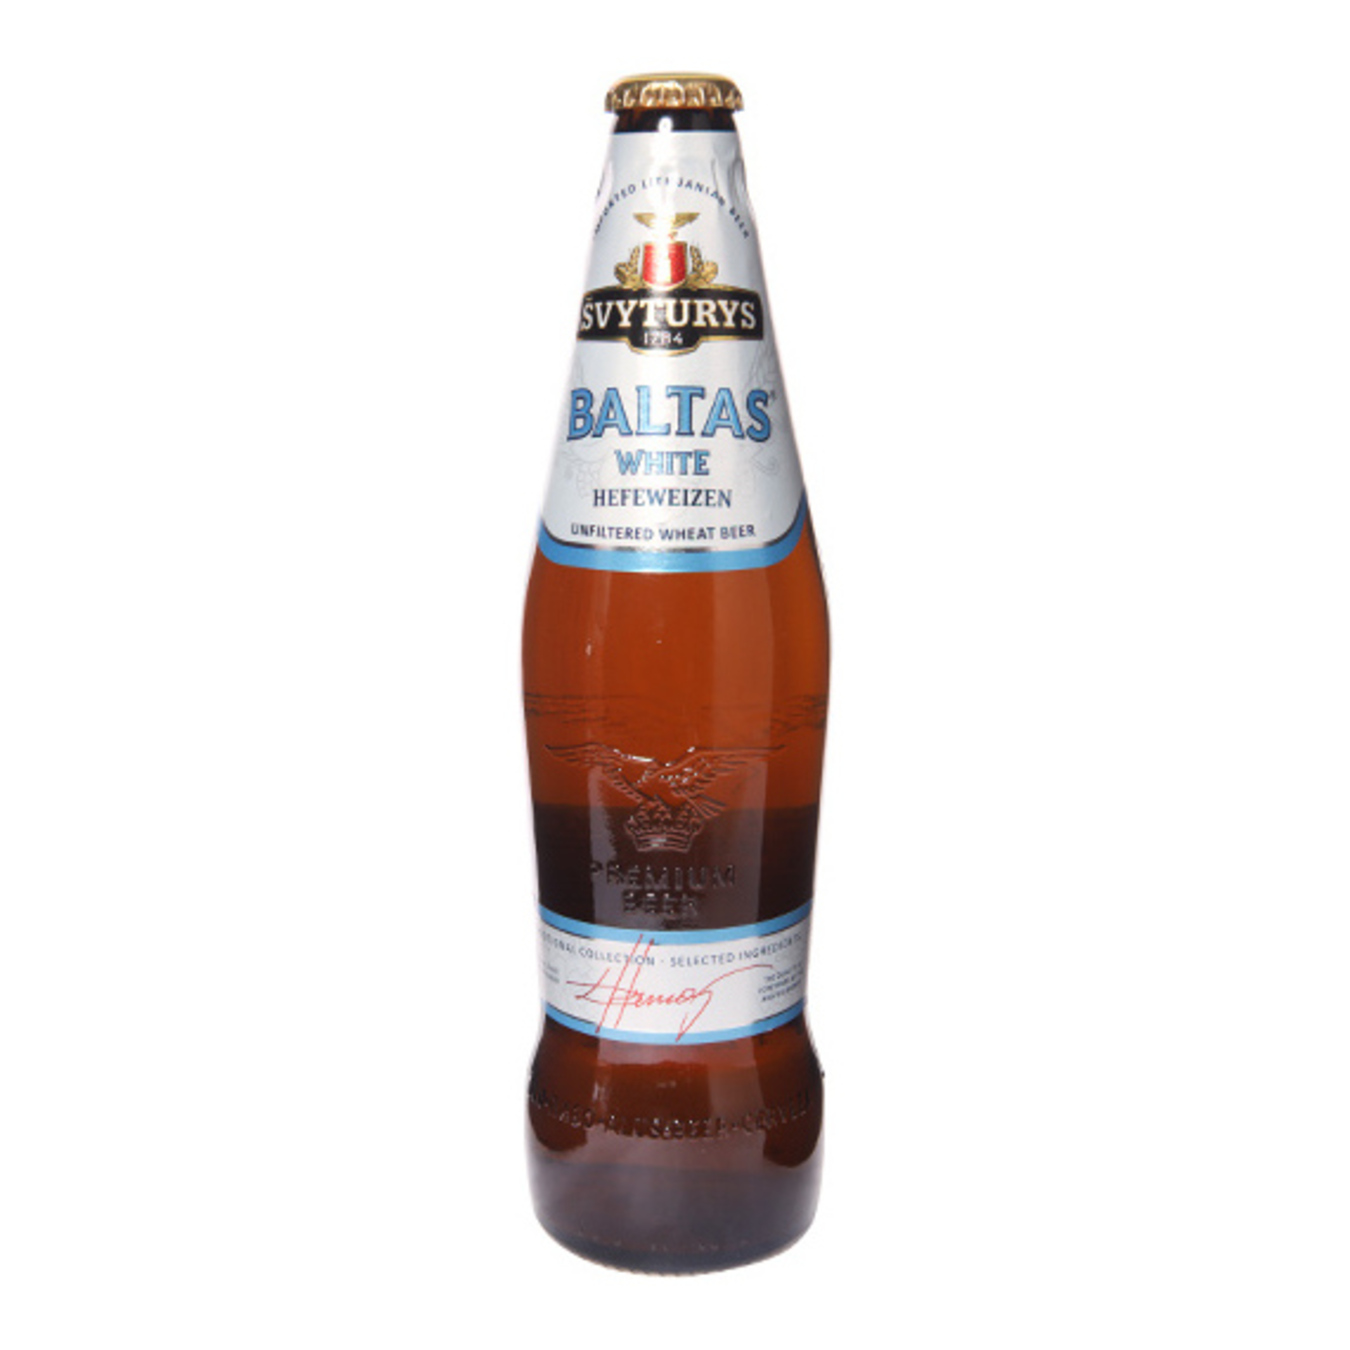 Beer Svyturus Baltas White Hefeweizen light 5% 0,5l